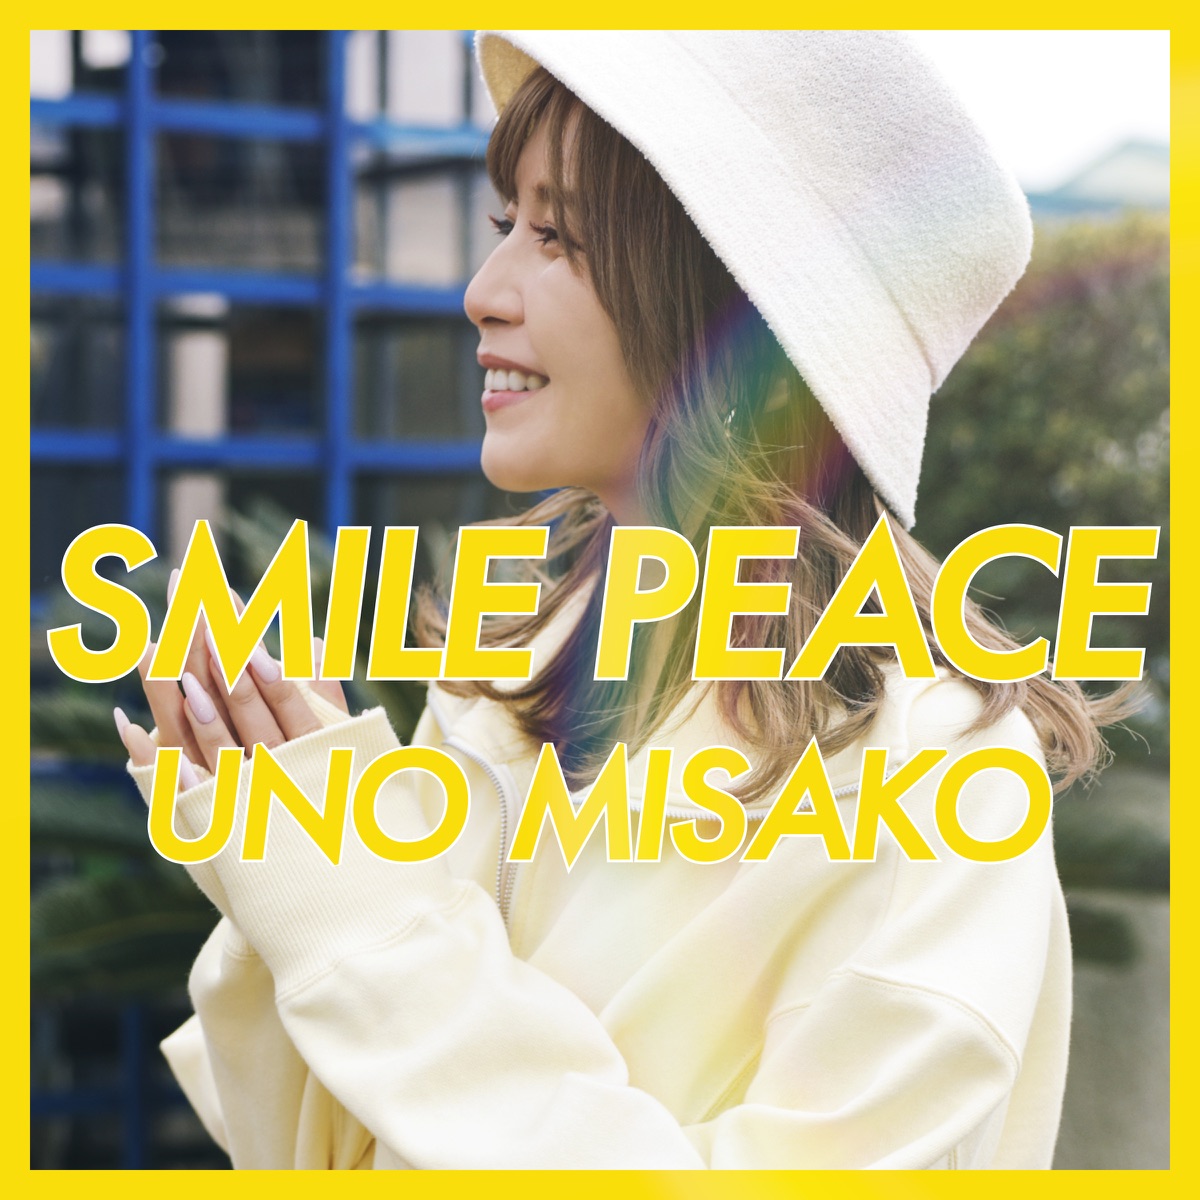 『宇野実彩子(AAA) - SMILE PEACE』収録の『SMILE PEACE』ジャケット